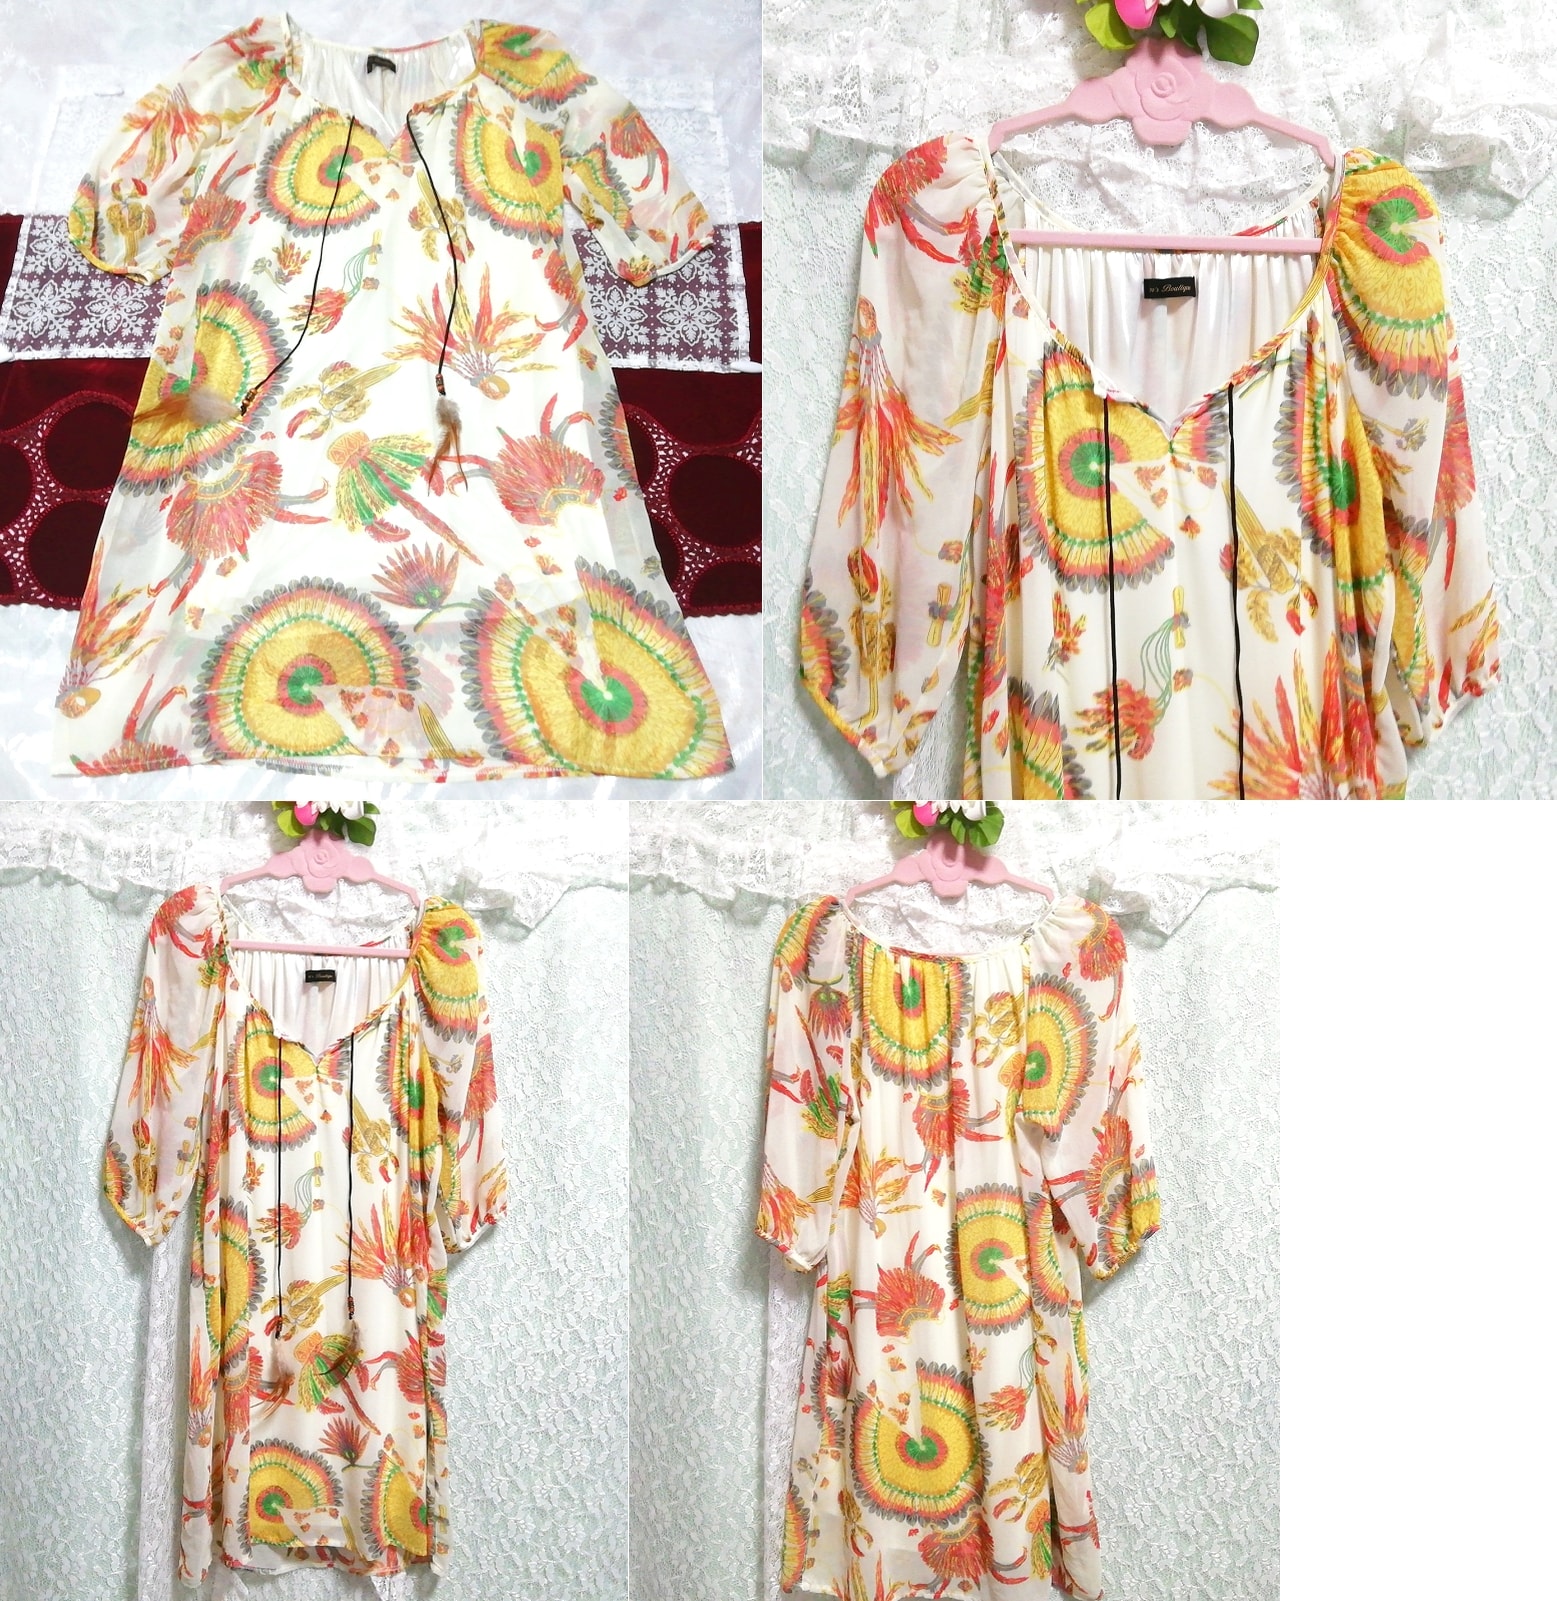 Yellow sunflower pattern feather string chiffon tunic negligee nightgown dress, tunic, long sleeve, m size